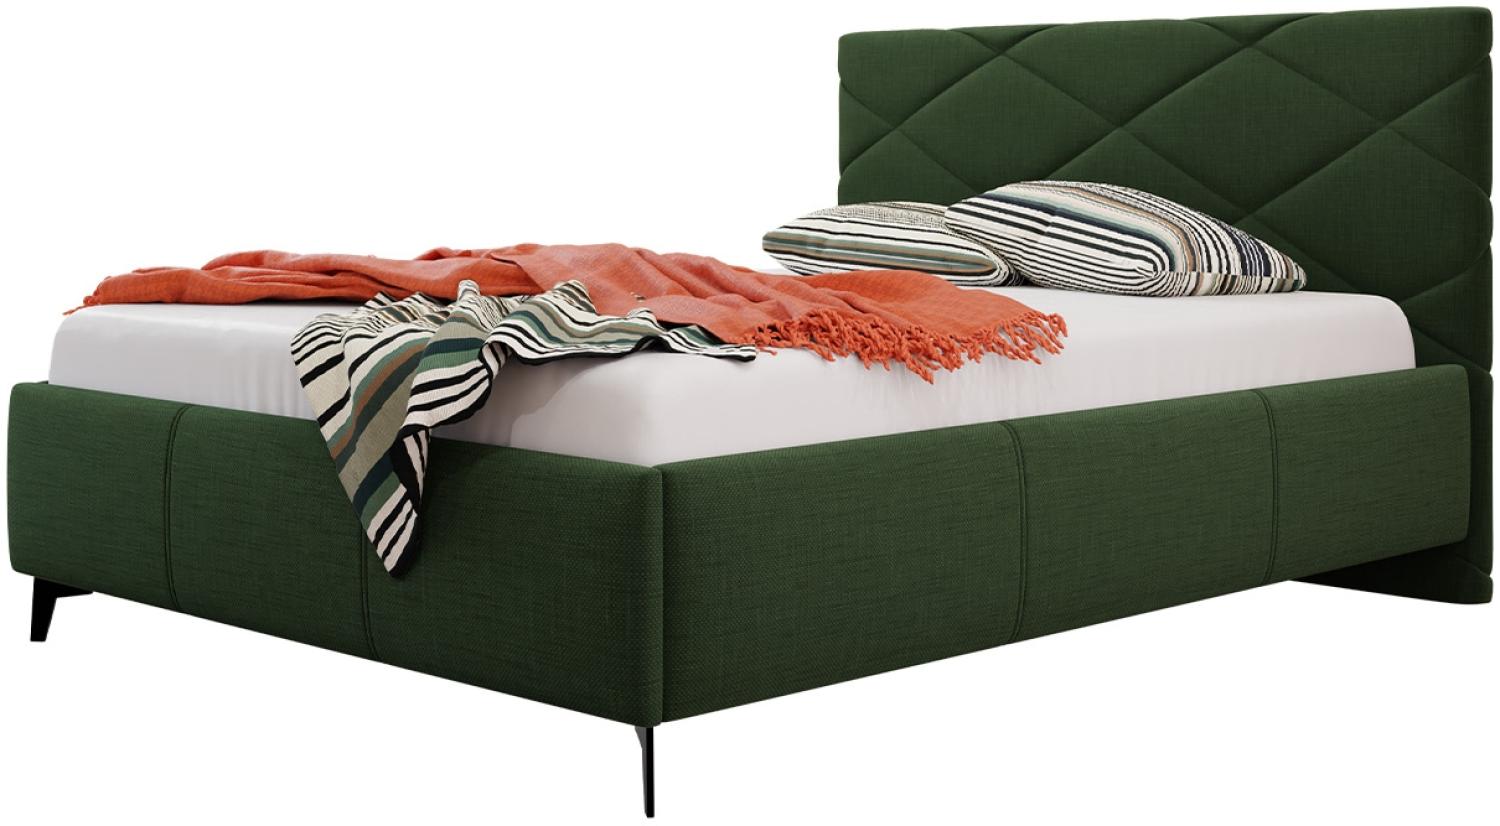 Polsterbett mit Bettkasten Samdom (Farbe: Breeze 11, Größe: 160x200 cm) Bild 1